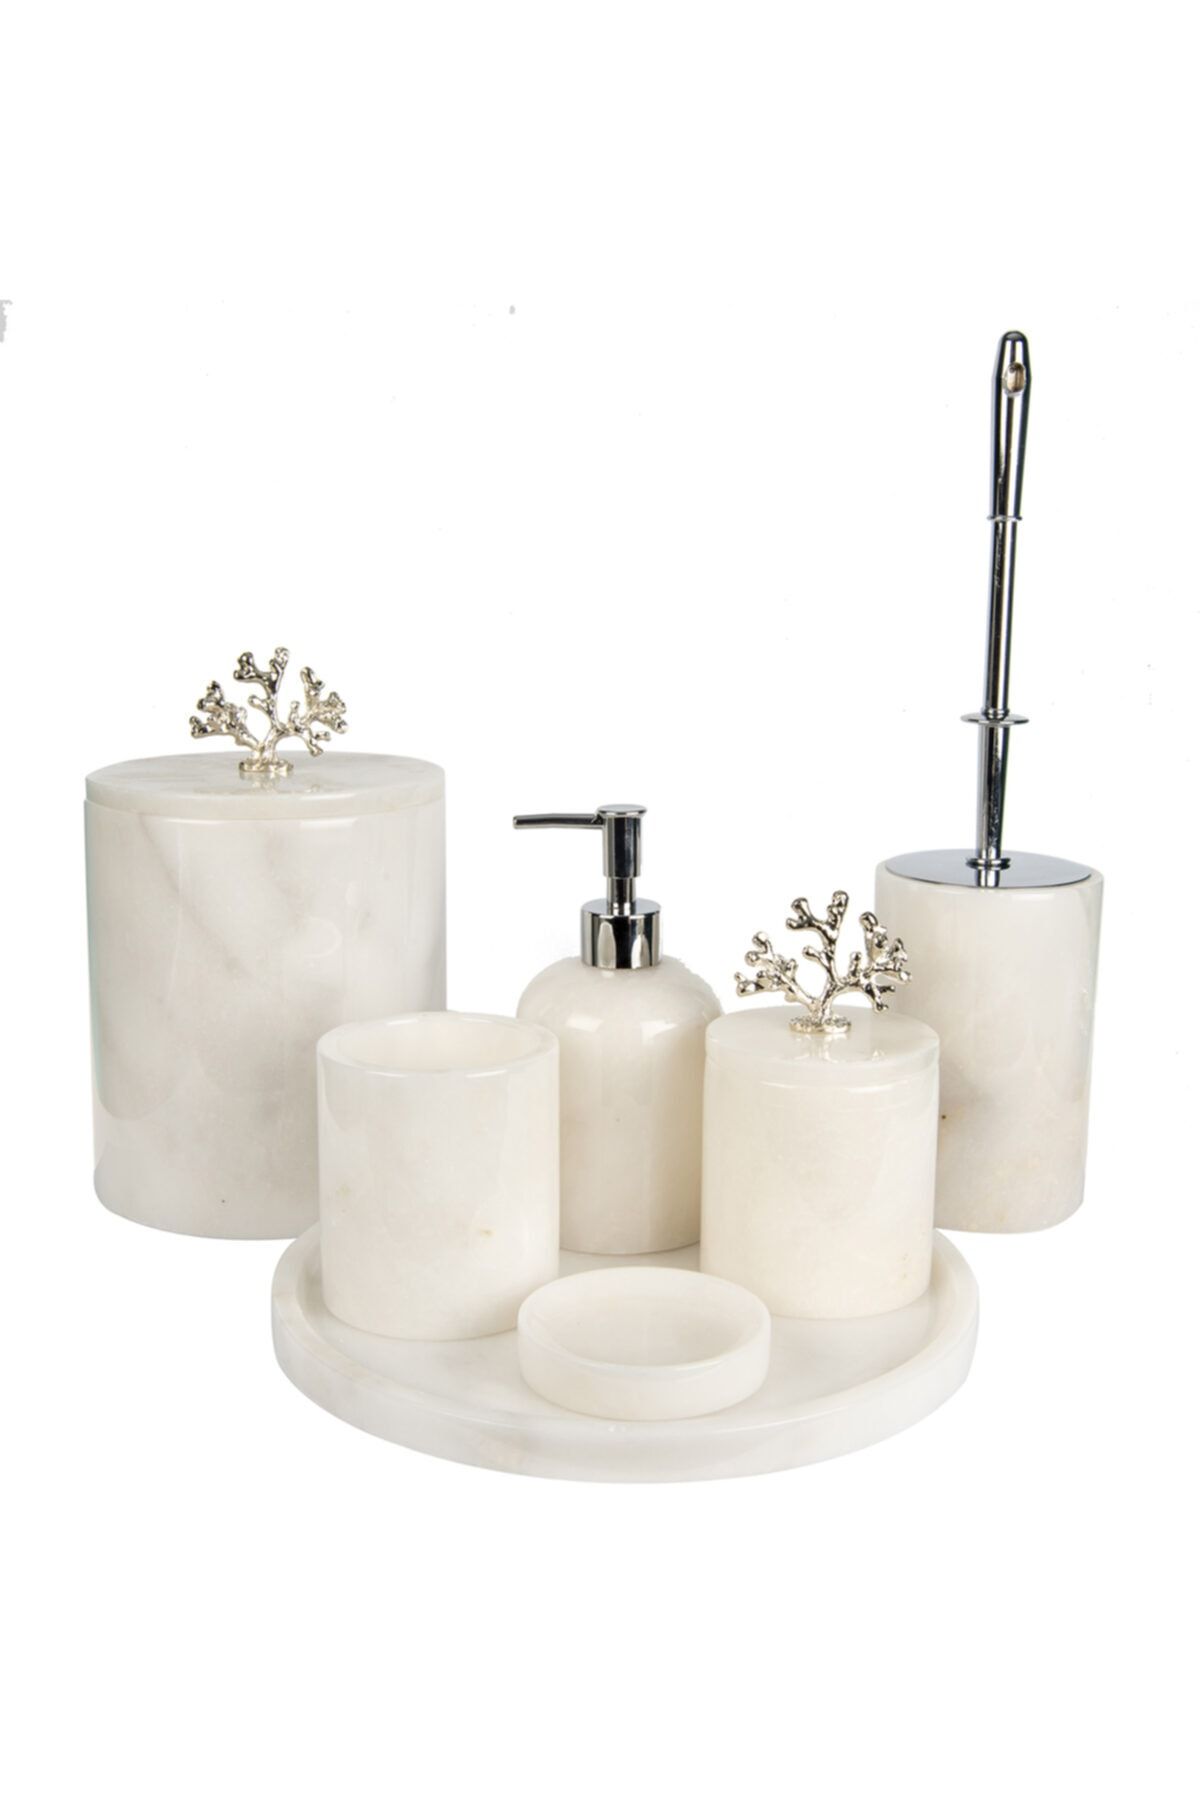 marandmore Rolin Beyaz Mermer Banyo Seti 7li - Gümüş Mercan